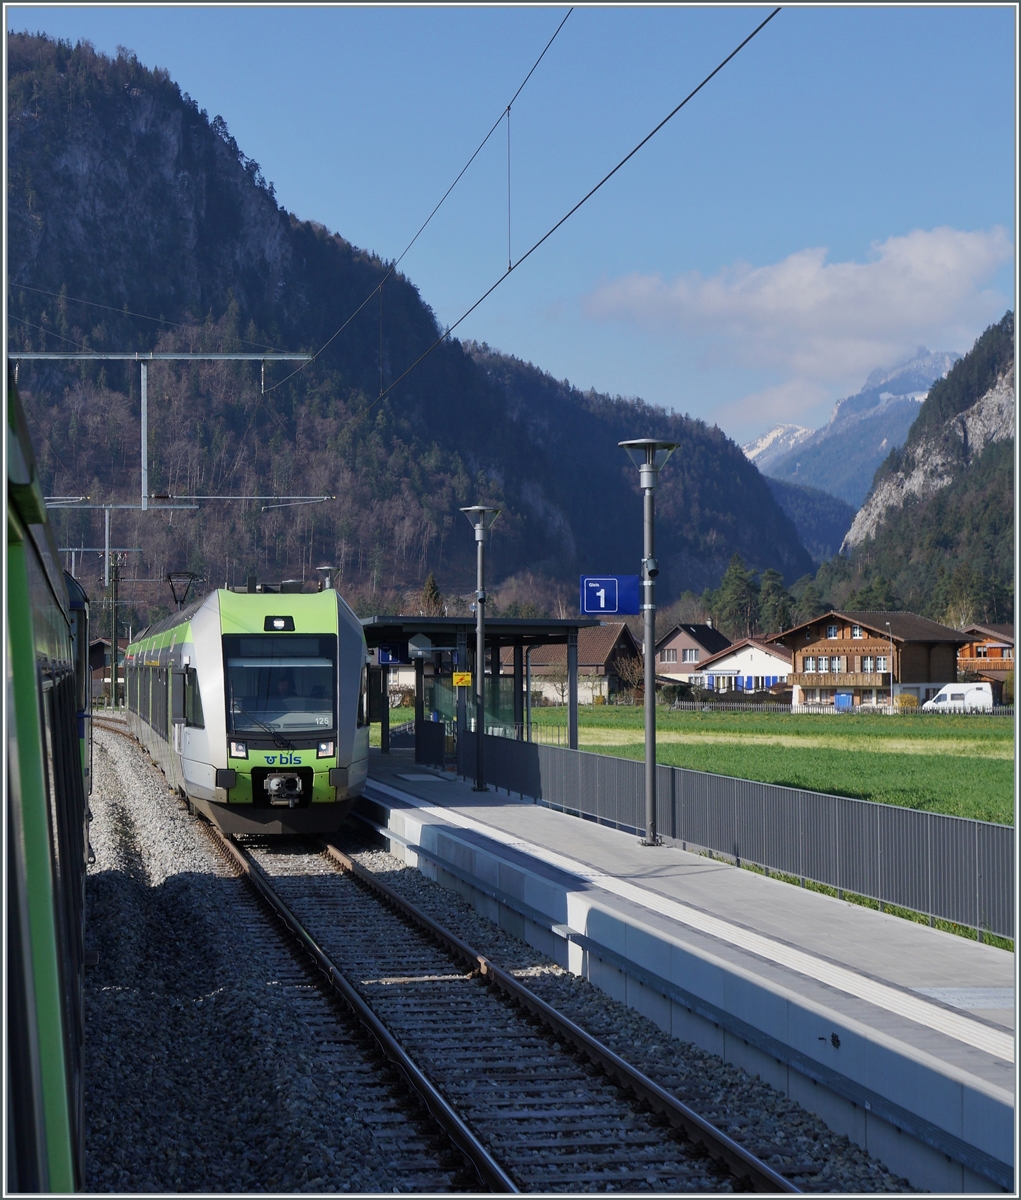 In kurz nach Spiez, in Eifeld kreuzt der RE nach Zweisimmen den BLS RABe 535 125 der als  Regionalzug/Regioexpress von Zweisimmen nach Bern unterwegs ist.
Im Hintergrund der Schmale  Eingang  ins Simmental. 

14. April 2021